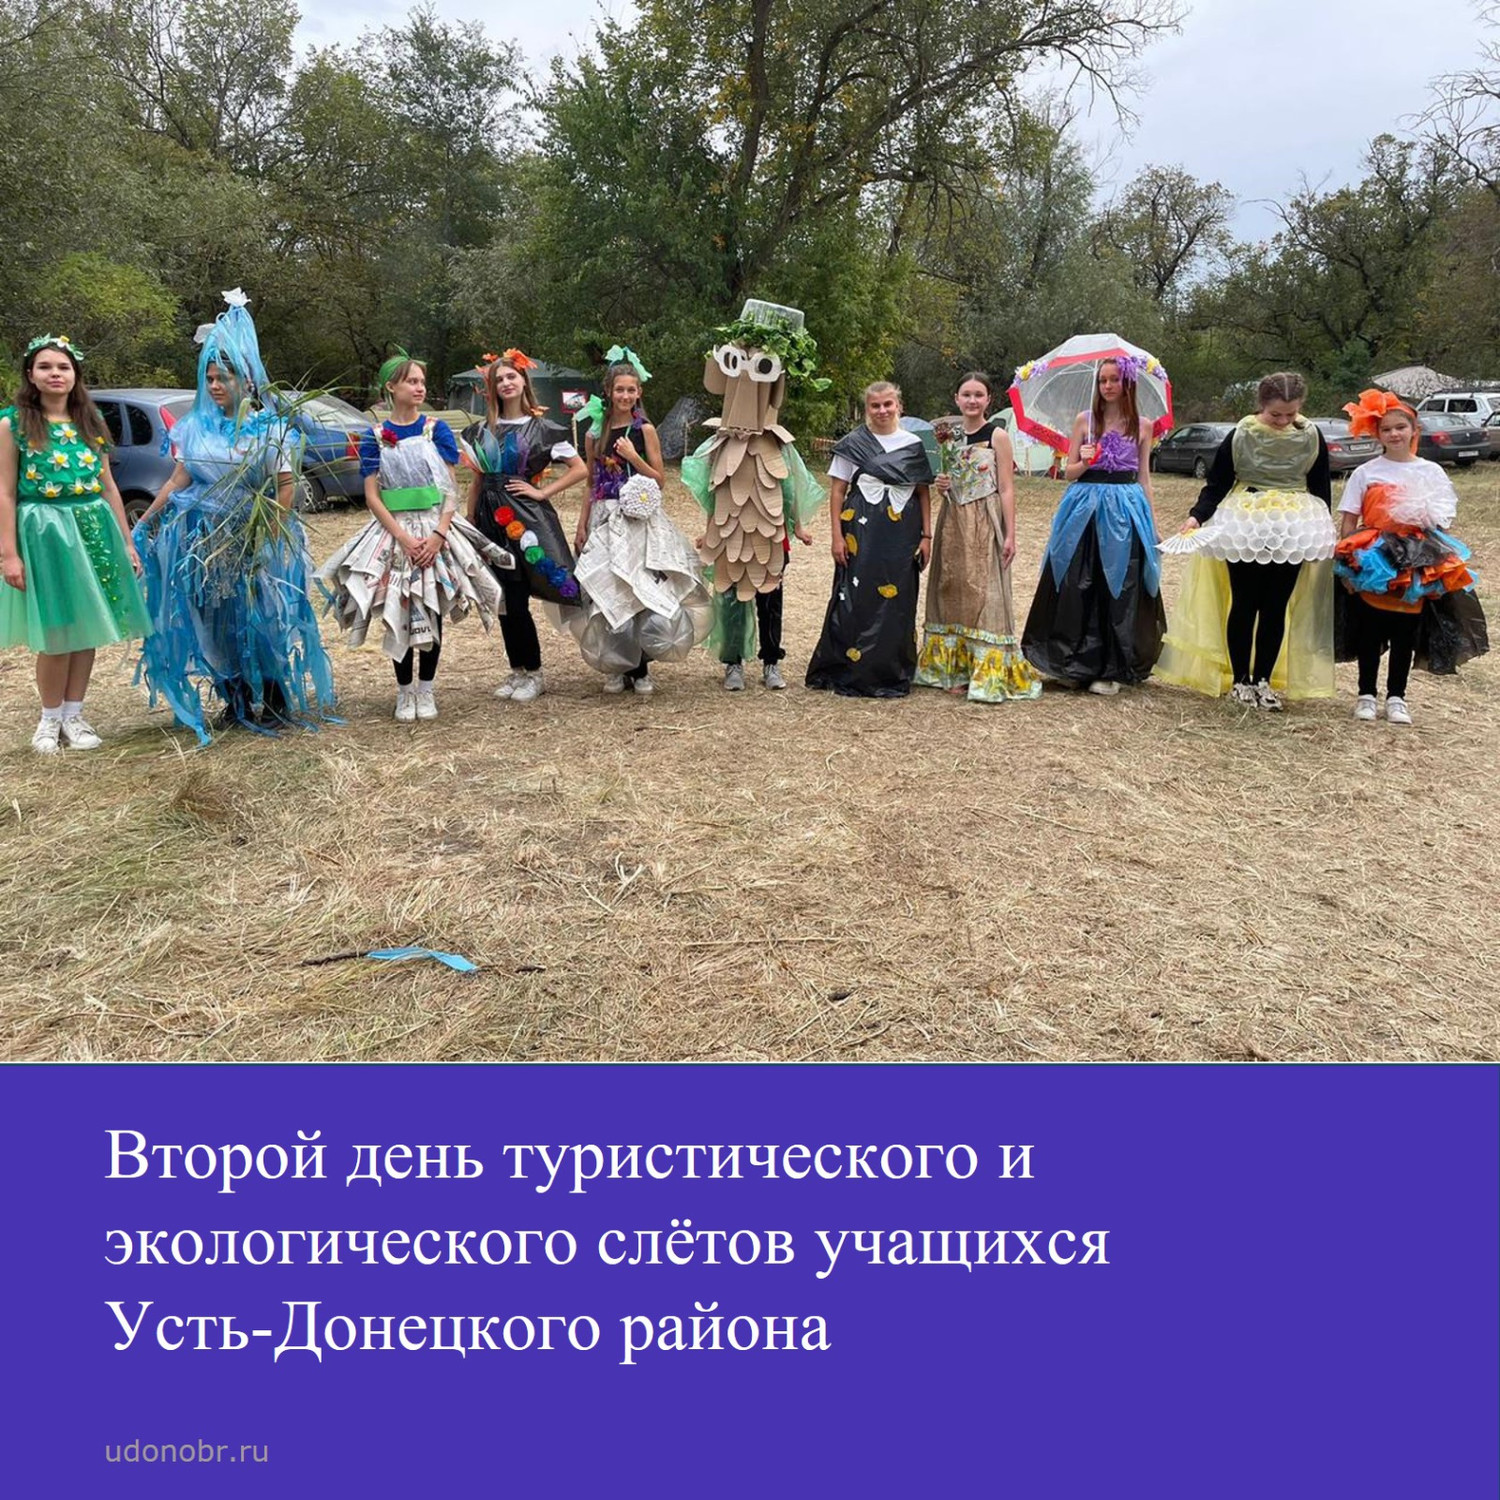 Второй день туристического и экологического слётов учащихся Усть-Донецкого района